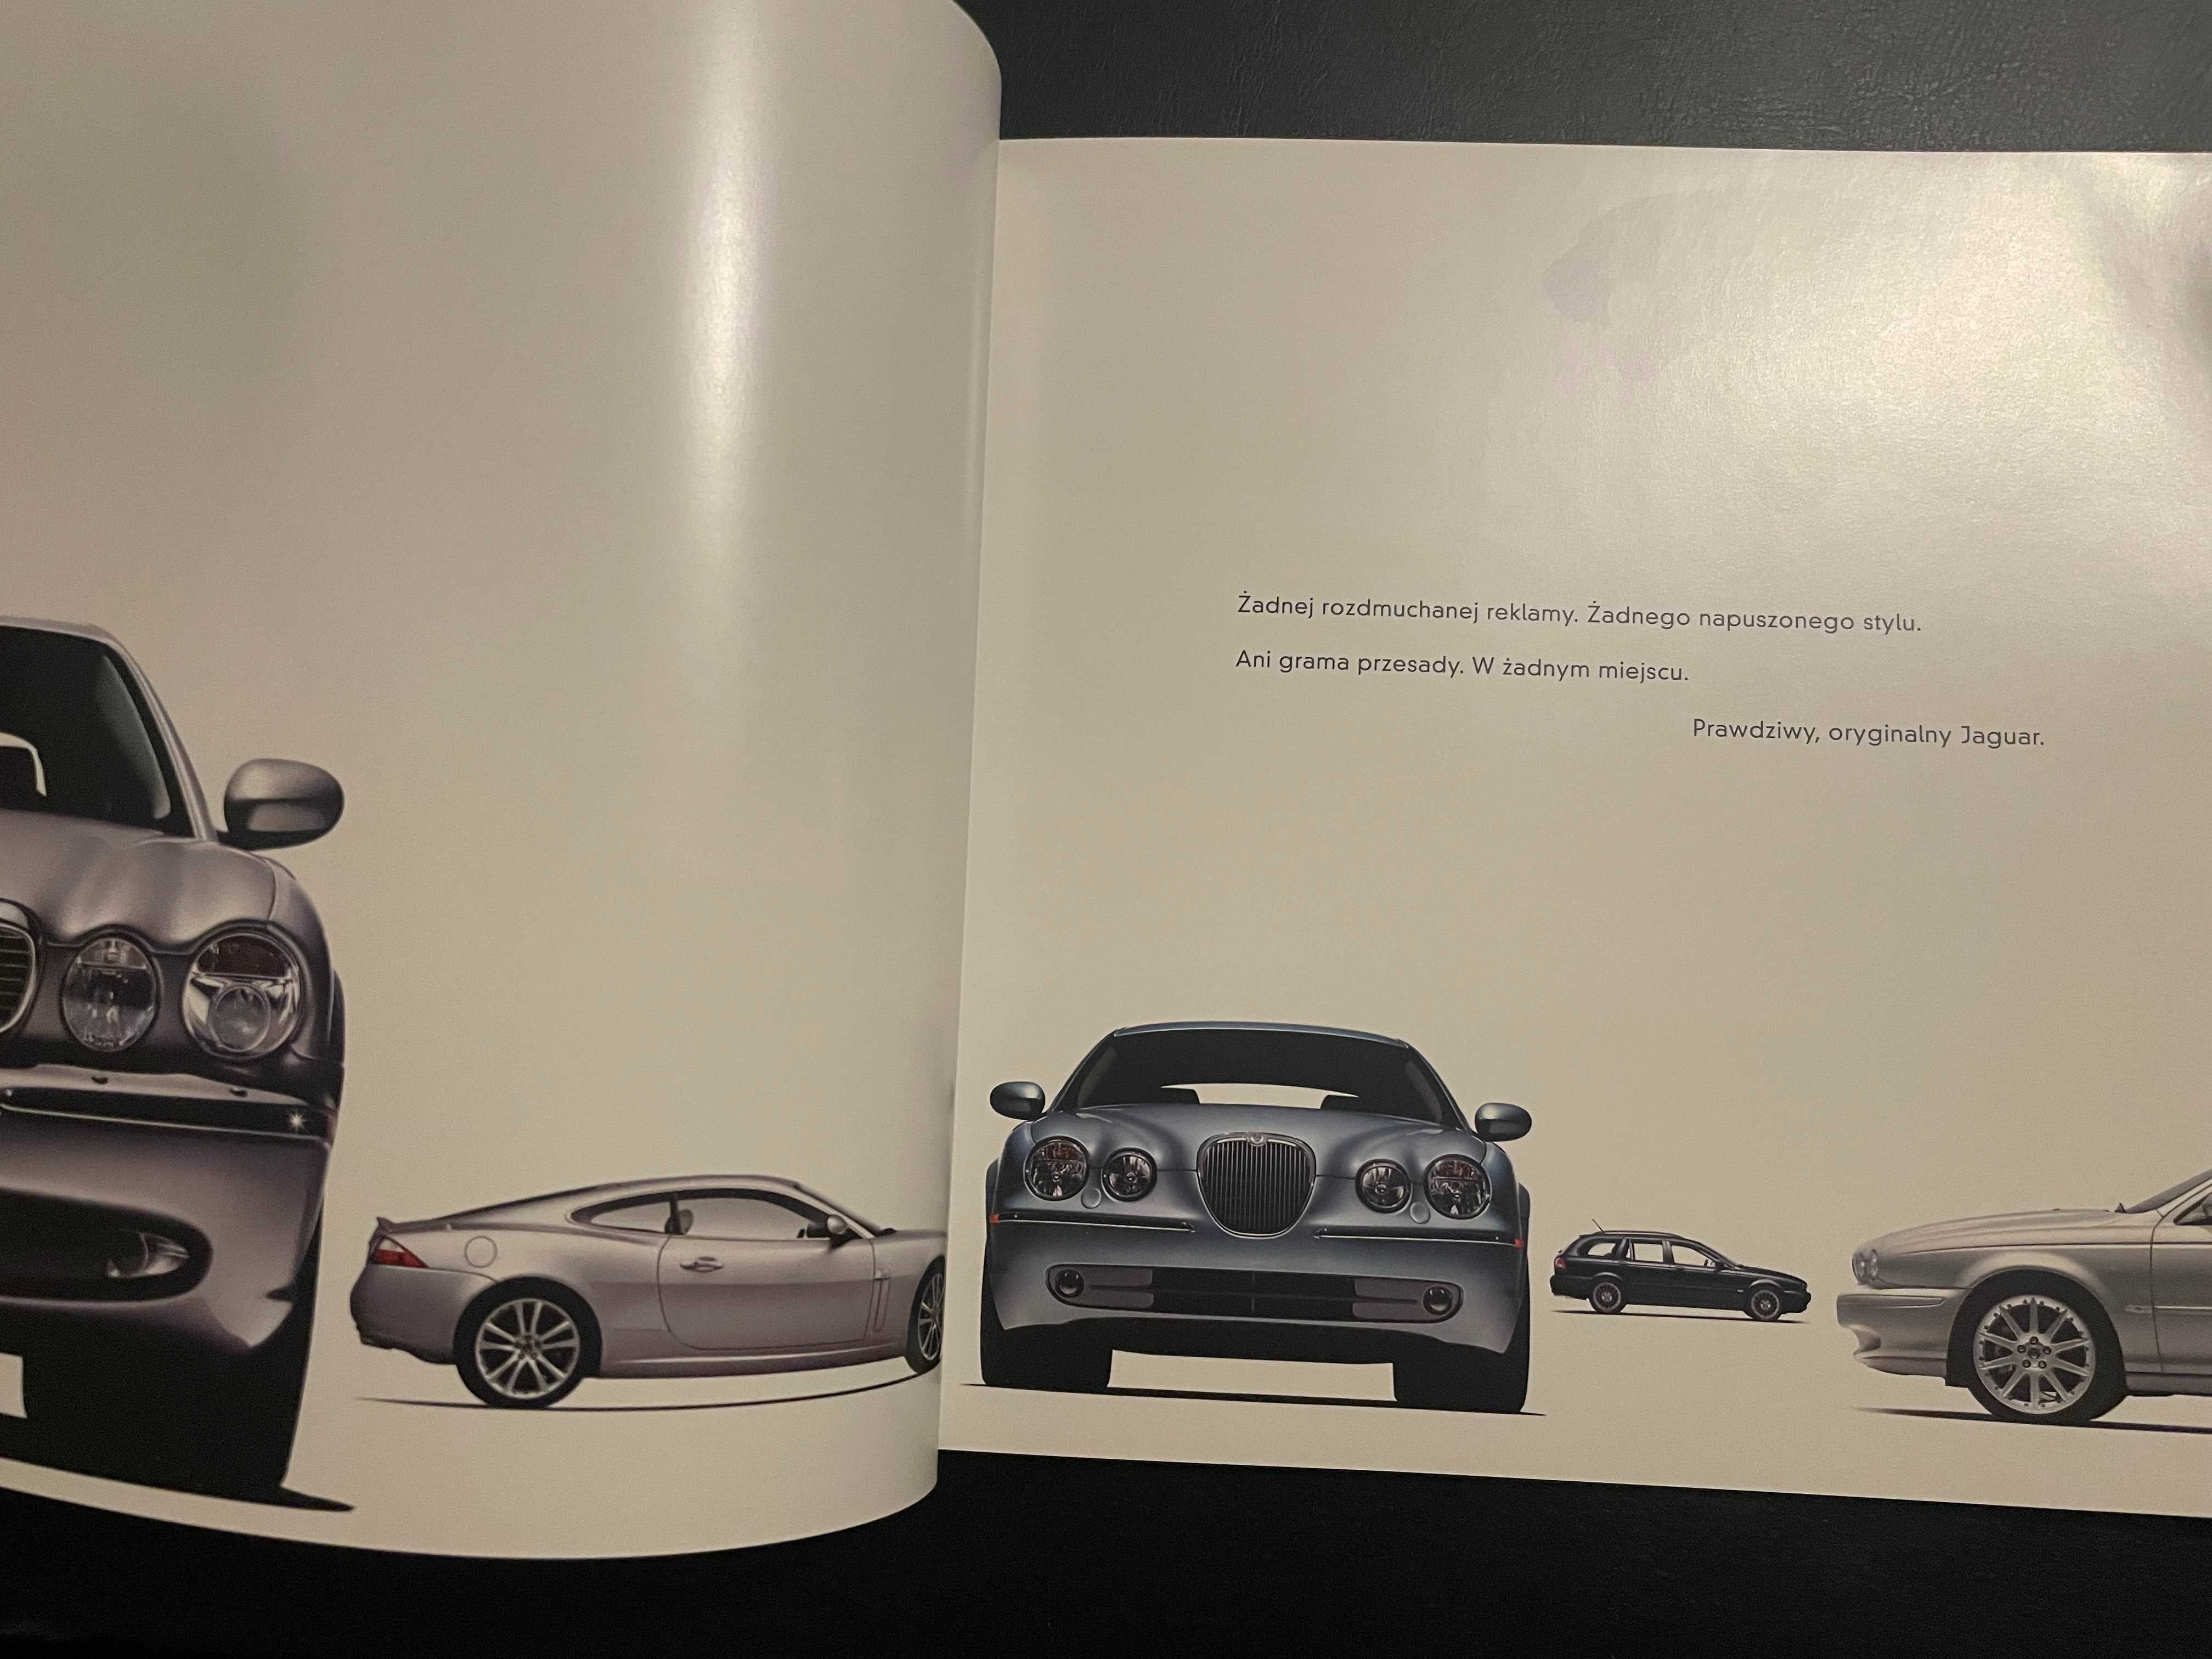 Katalog prospekt Jaguar program modele 2006 r. 52 strony język PL